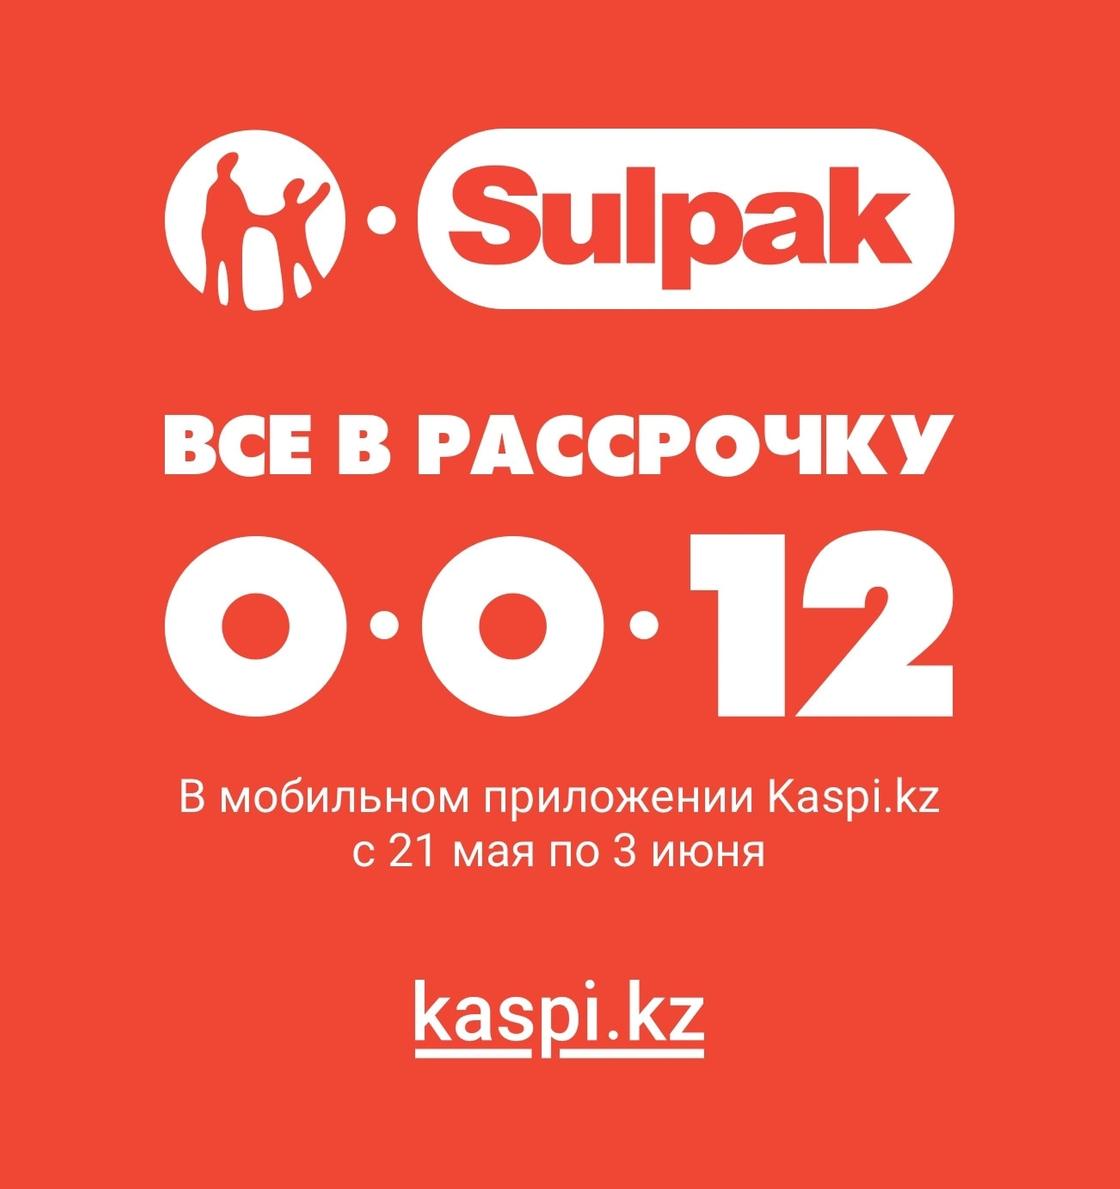 Рассрочка до 12 месяцев от Kaspi.kz и Sulpak